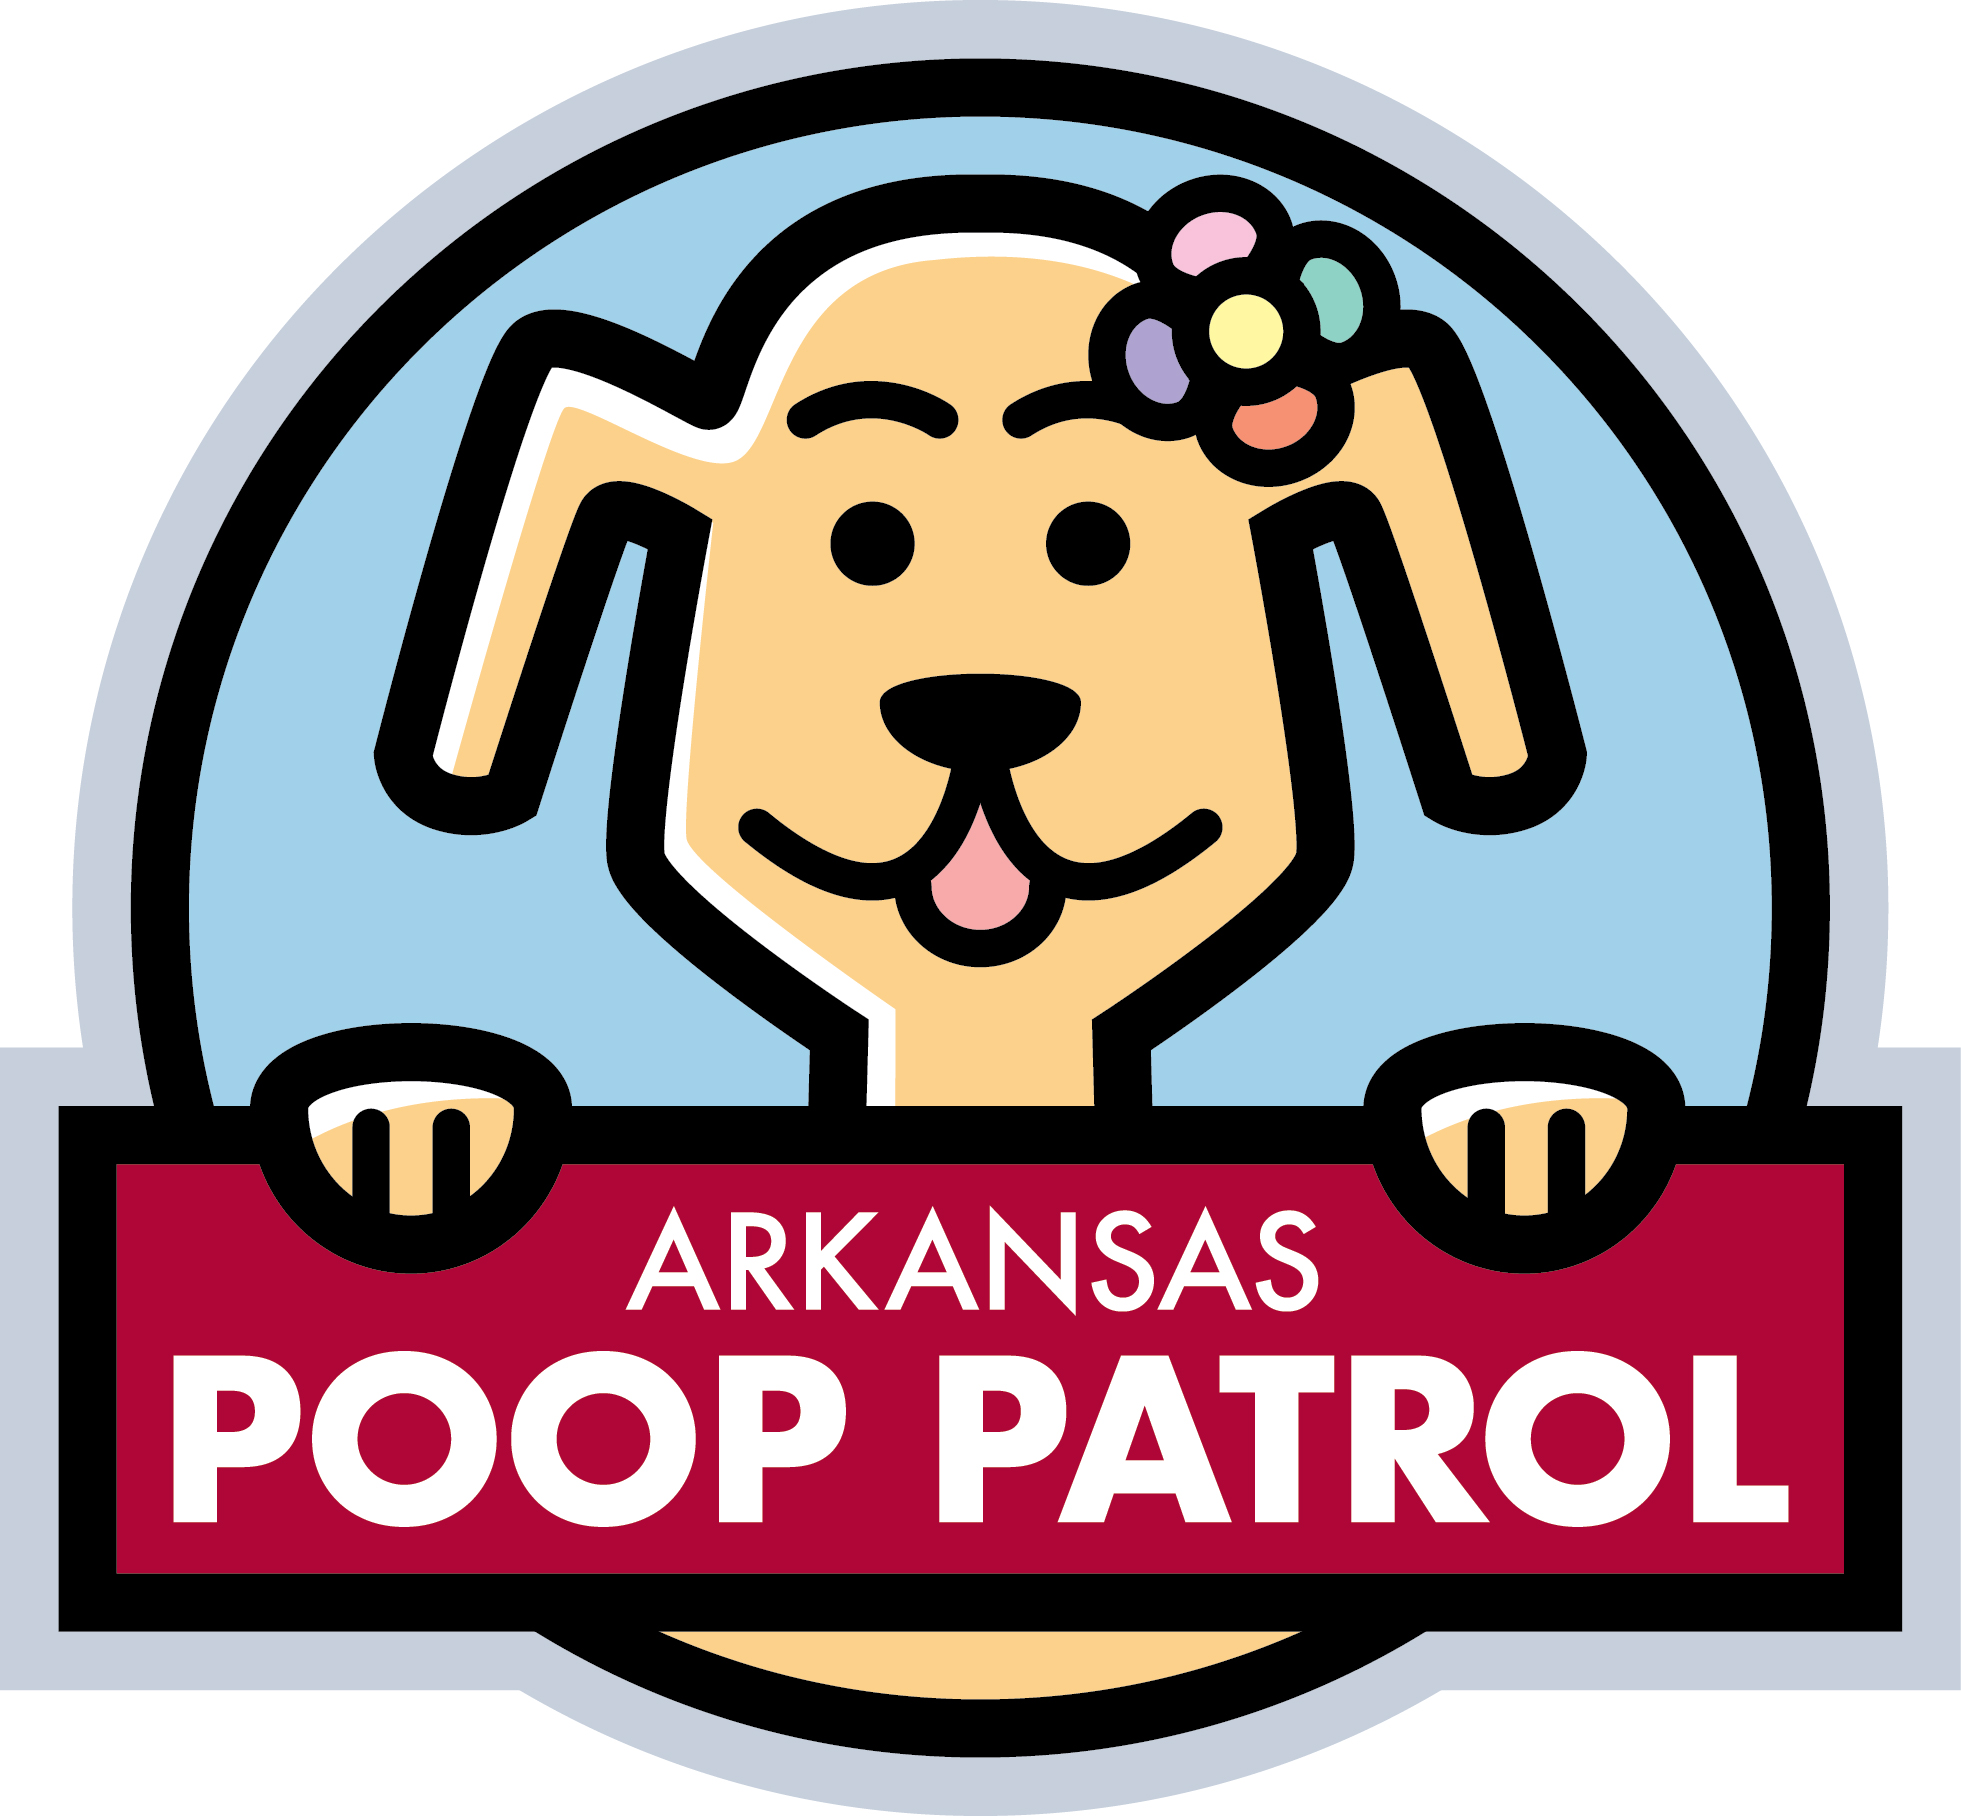 Arkansas Poop Patrol